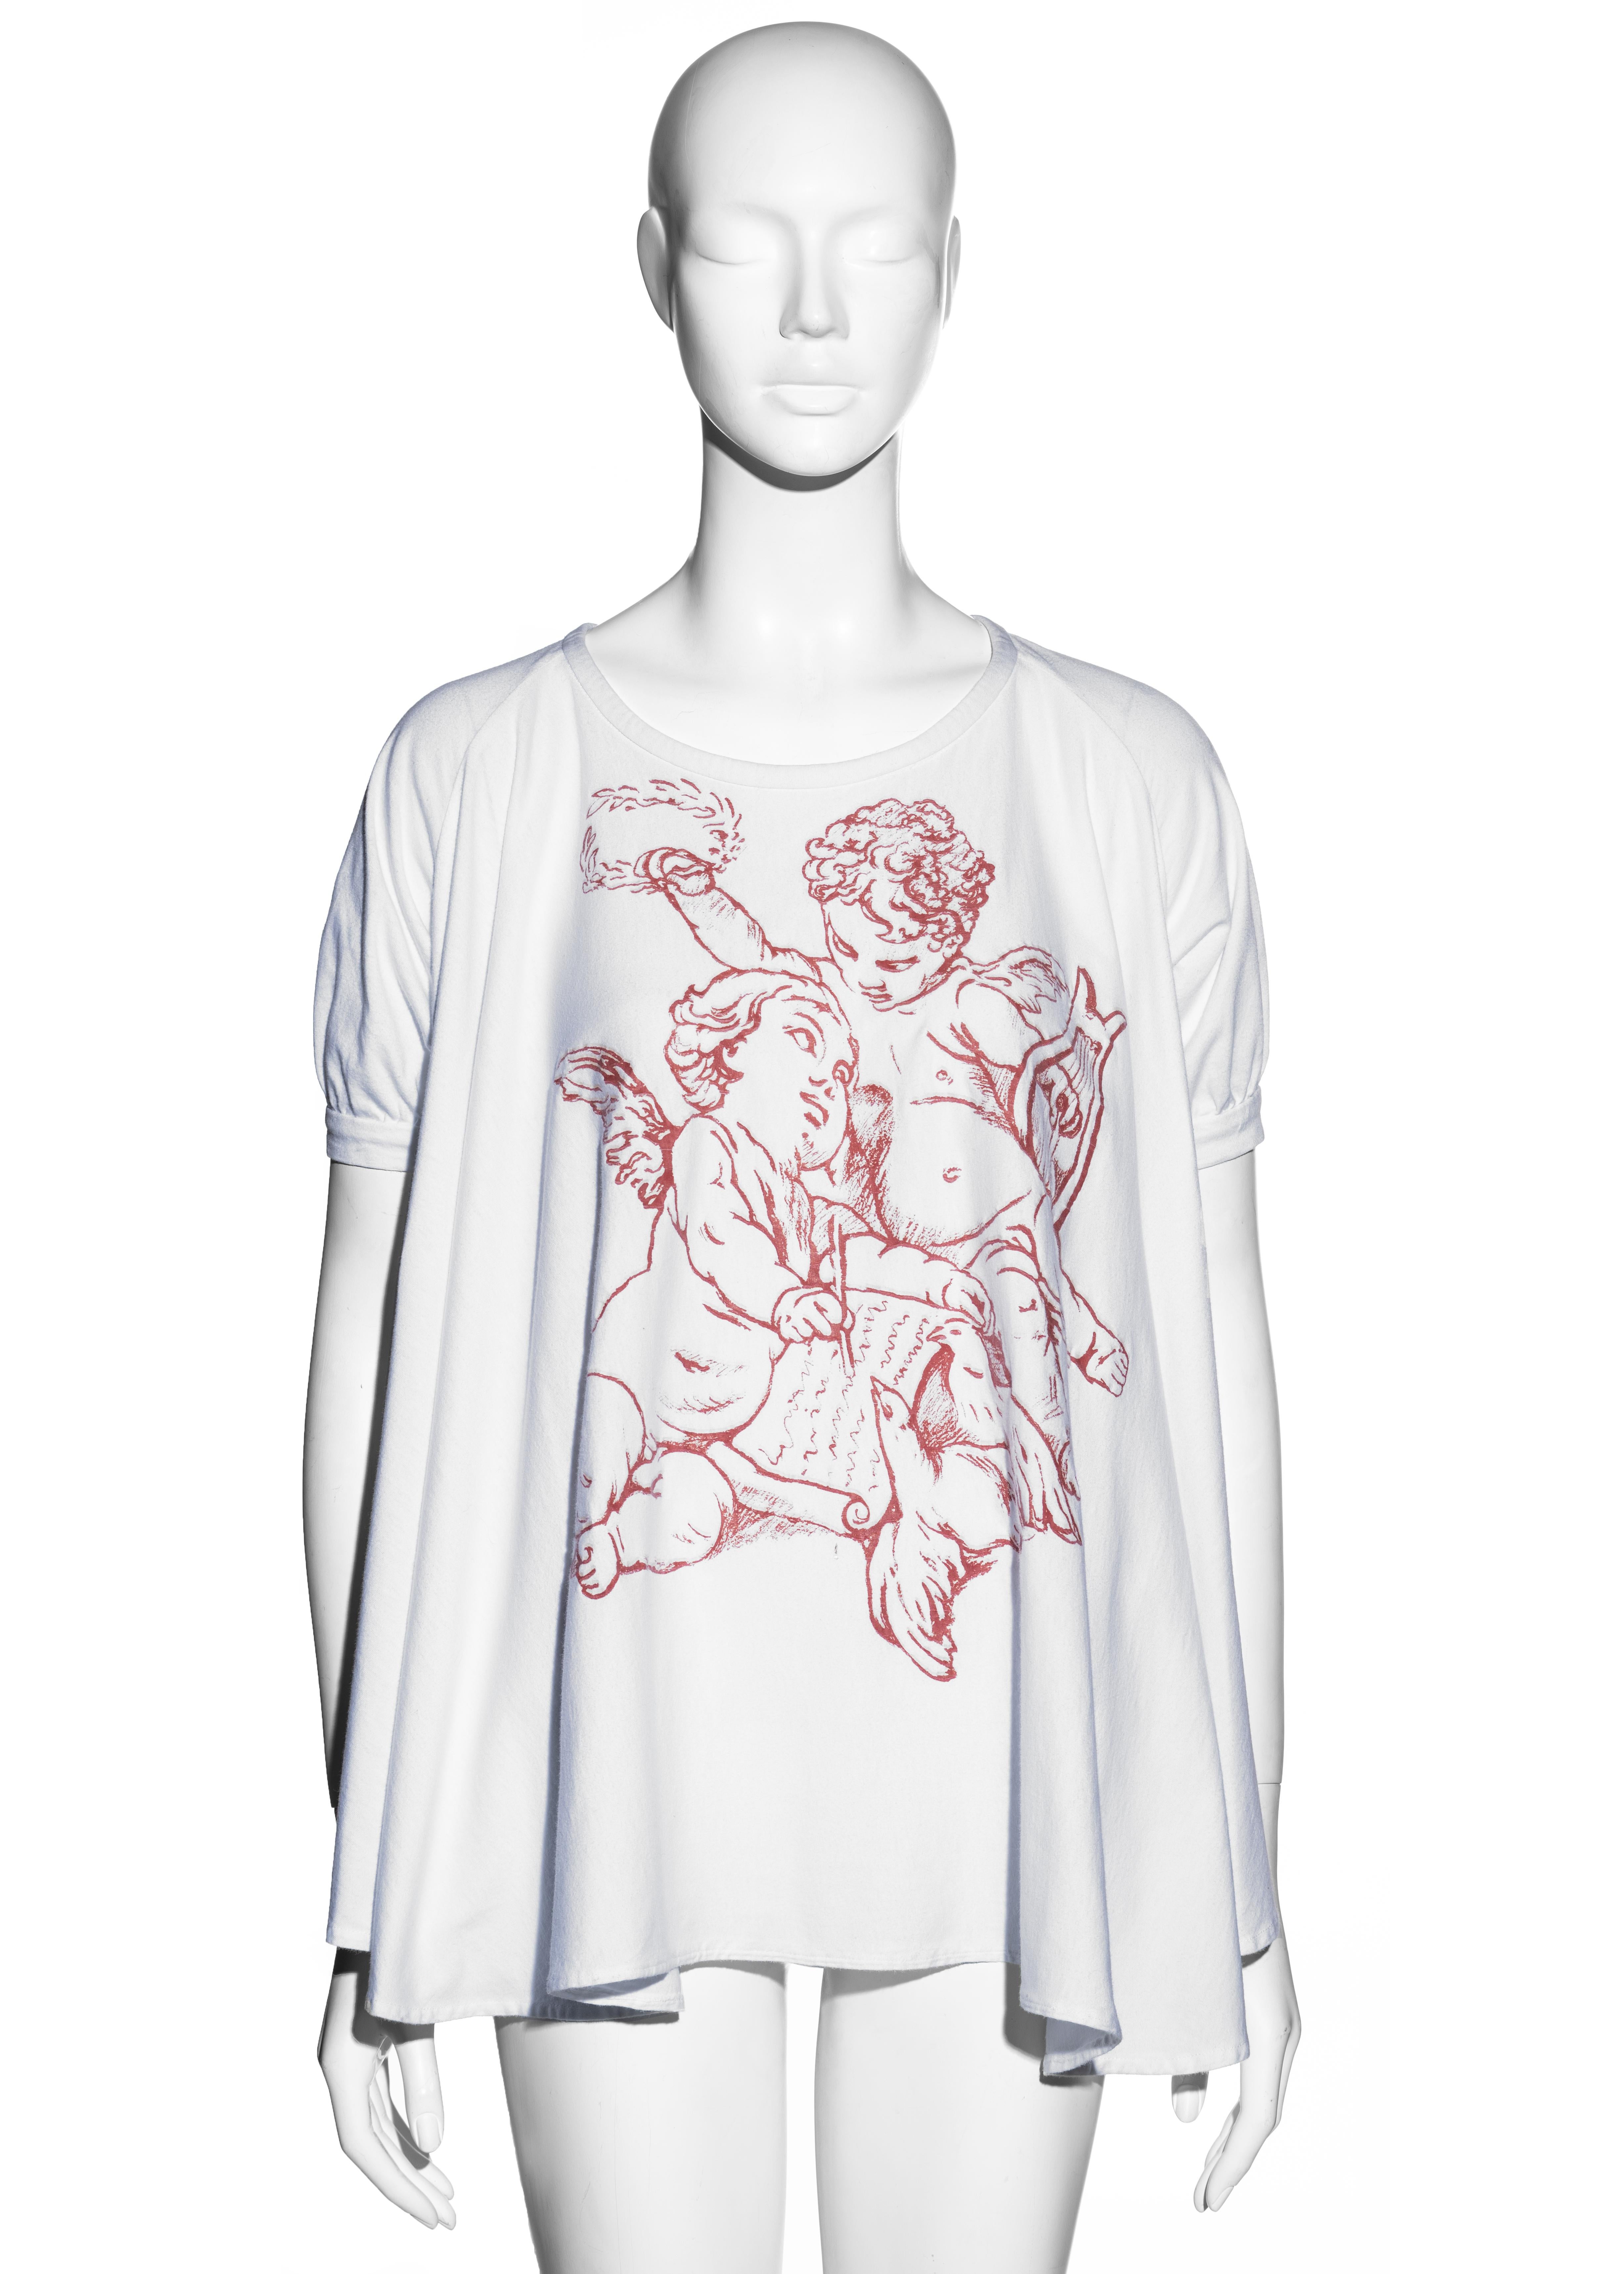 ▪ Vivienne Westwood white cotton t-shirt
▪ Cherub print 
▪ Short puff sleeve
▪ Wide cut
▪ One Size
▪ Spring-Summer 1991